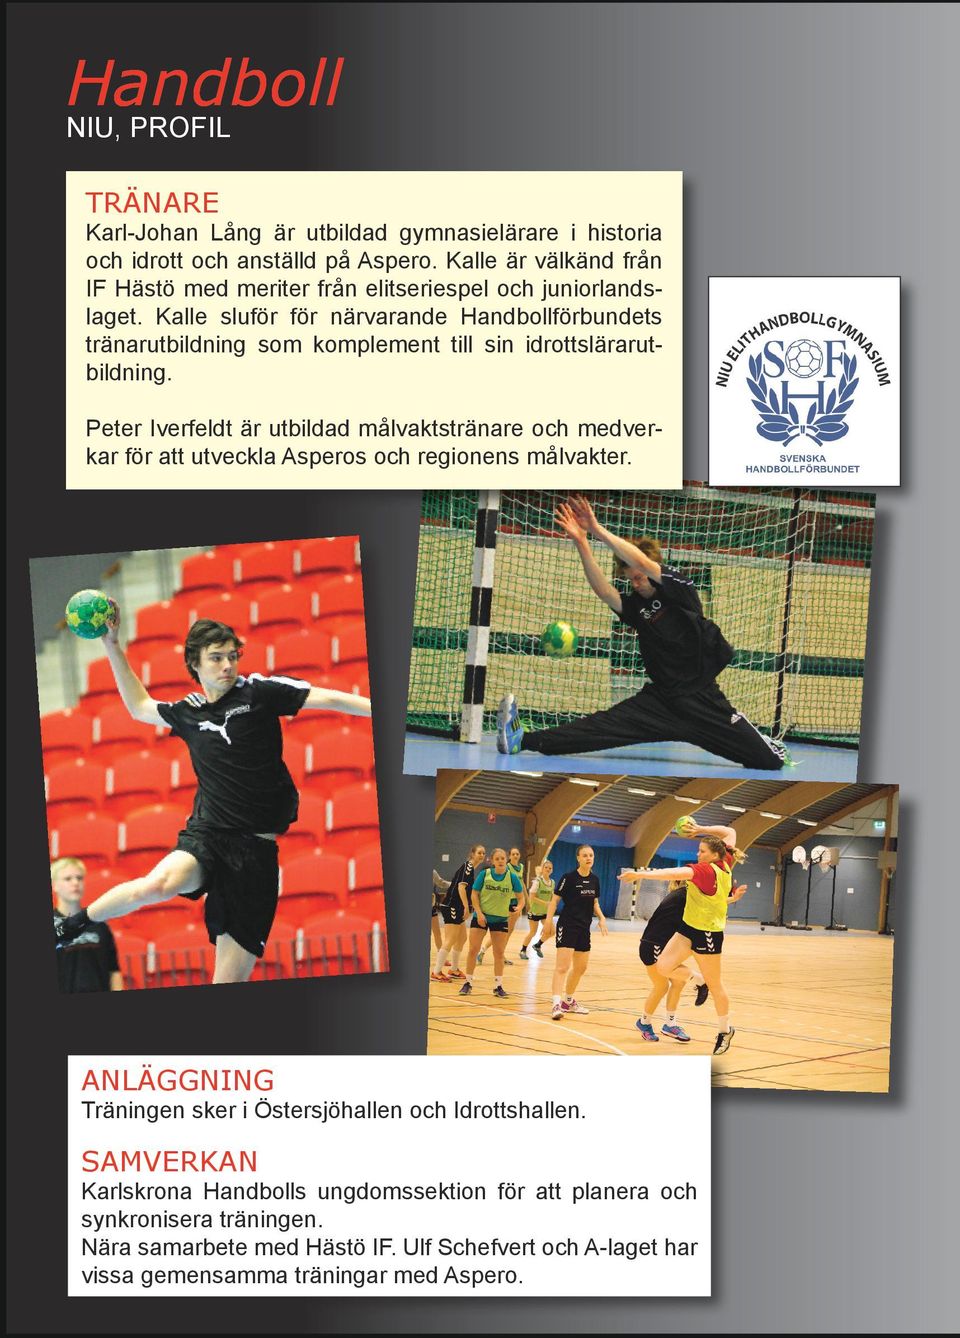 Kalle sluför för närvarande Handbollförbundets tränarutbildning som komplement till sin idrottslärarutbildning.